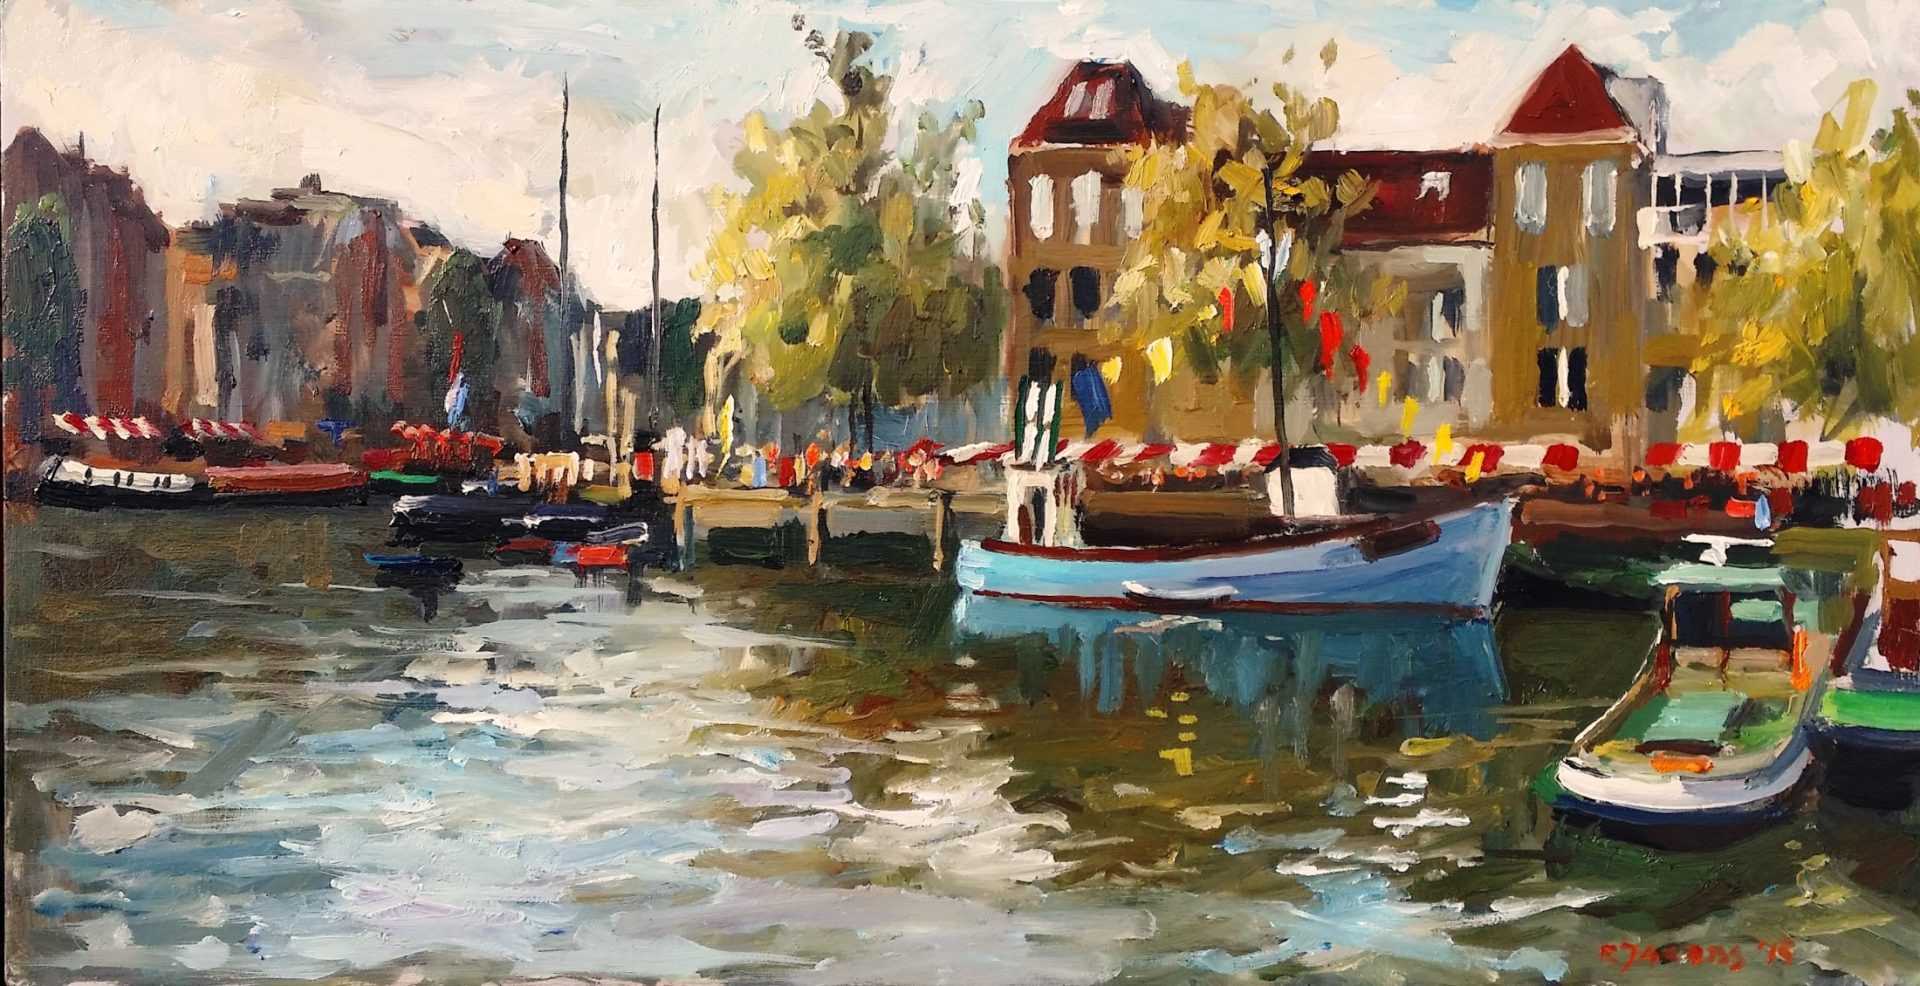 Rob Jacobs schildert doek tijdens het Furieade evenement in de haven van Maassluis, Zuid-Holland.